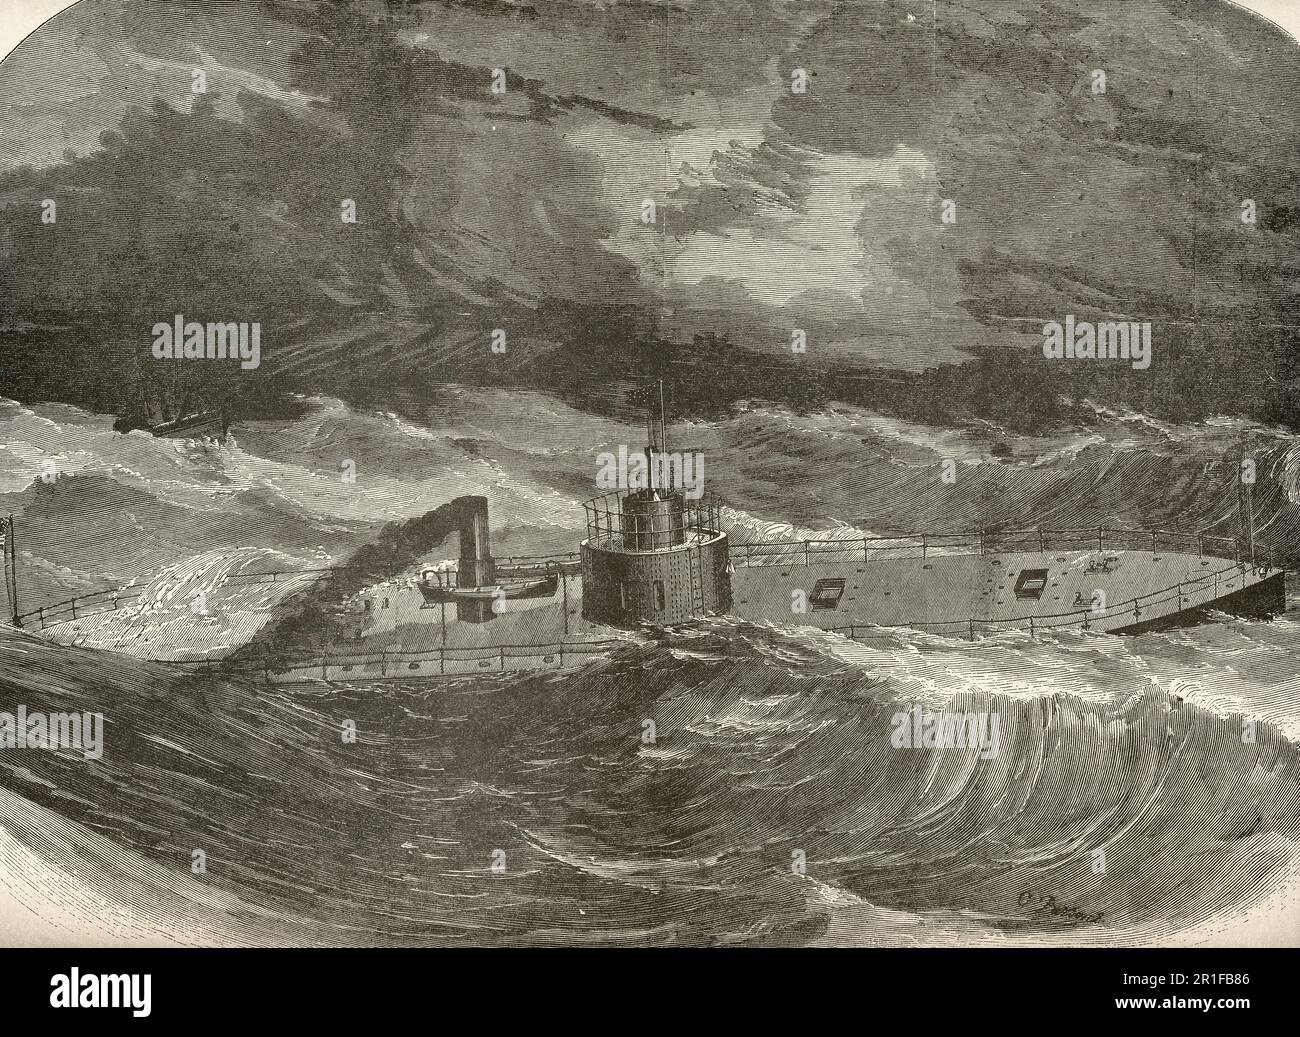 Gli Stati Uniti Ironclad Passaic come appare in mare durante la guerra civile americana Foto Stock